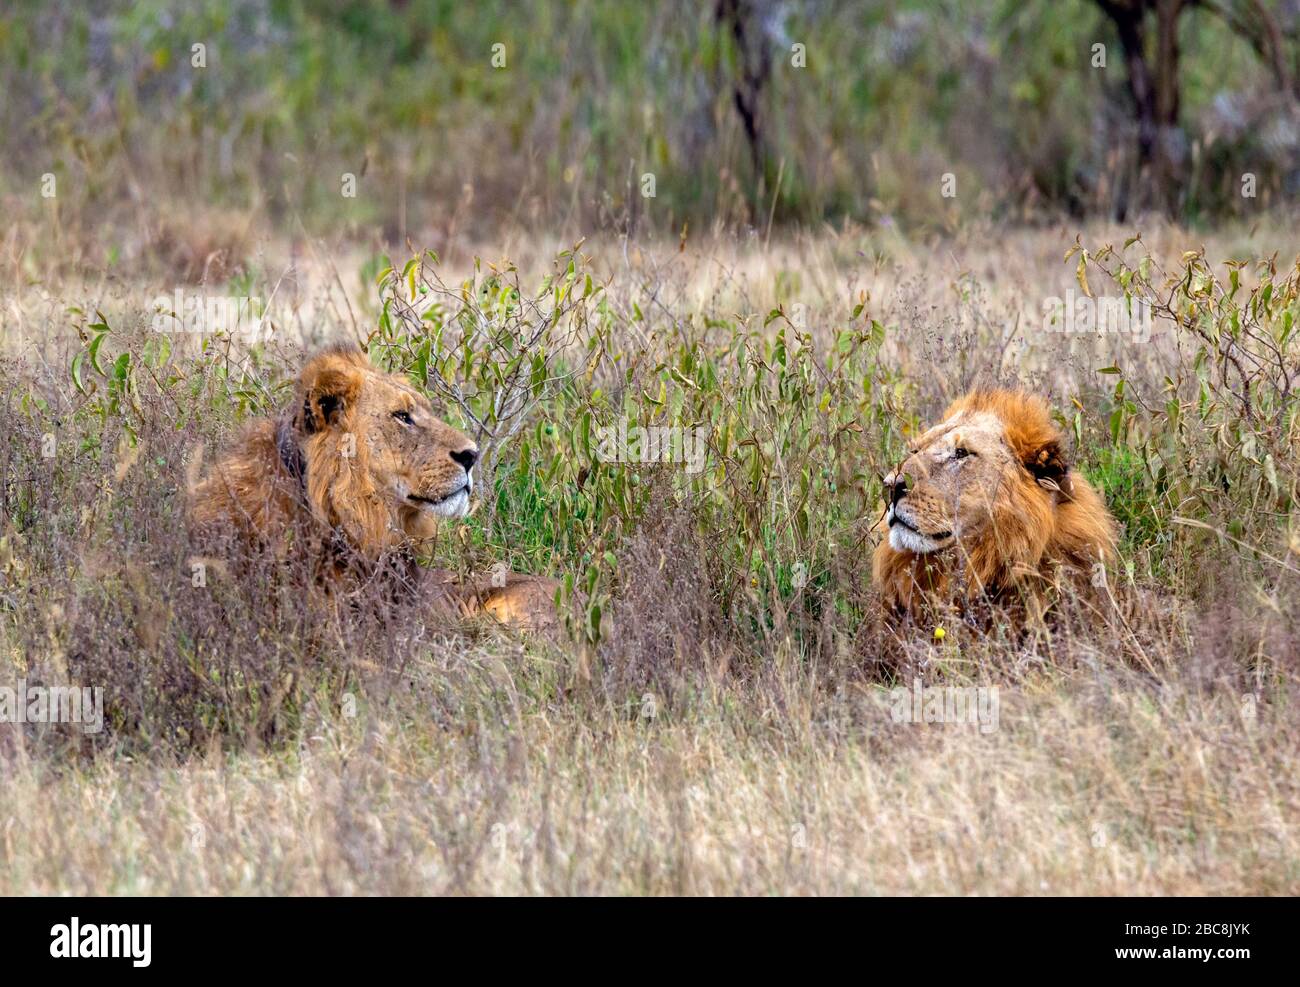 Lion (Panthera leo). Deux lions mâles qui se trouvent dans une herbe longue, le parc national du lac Nakuru, Kenya, Afrique Banque D'Images